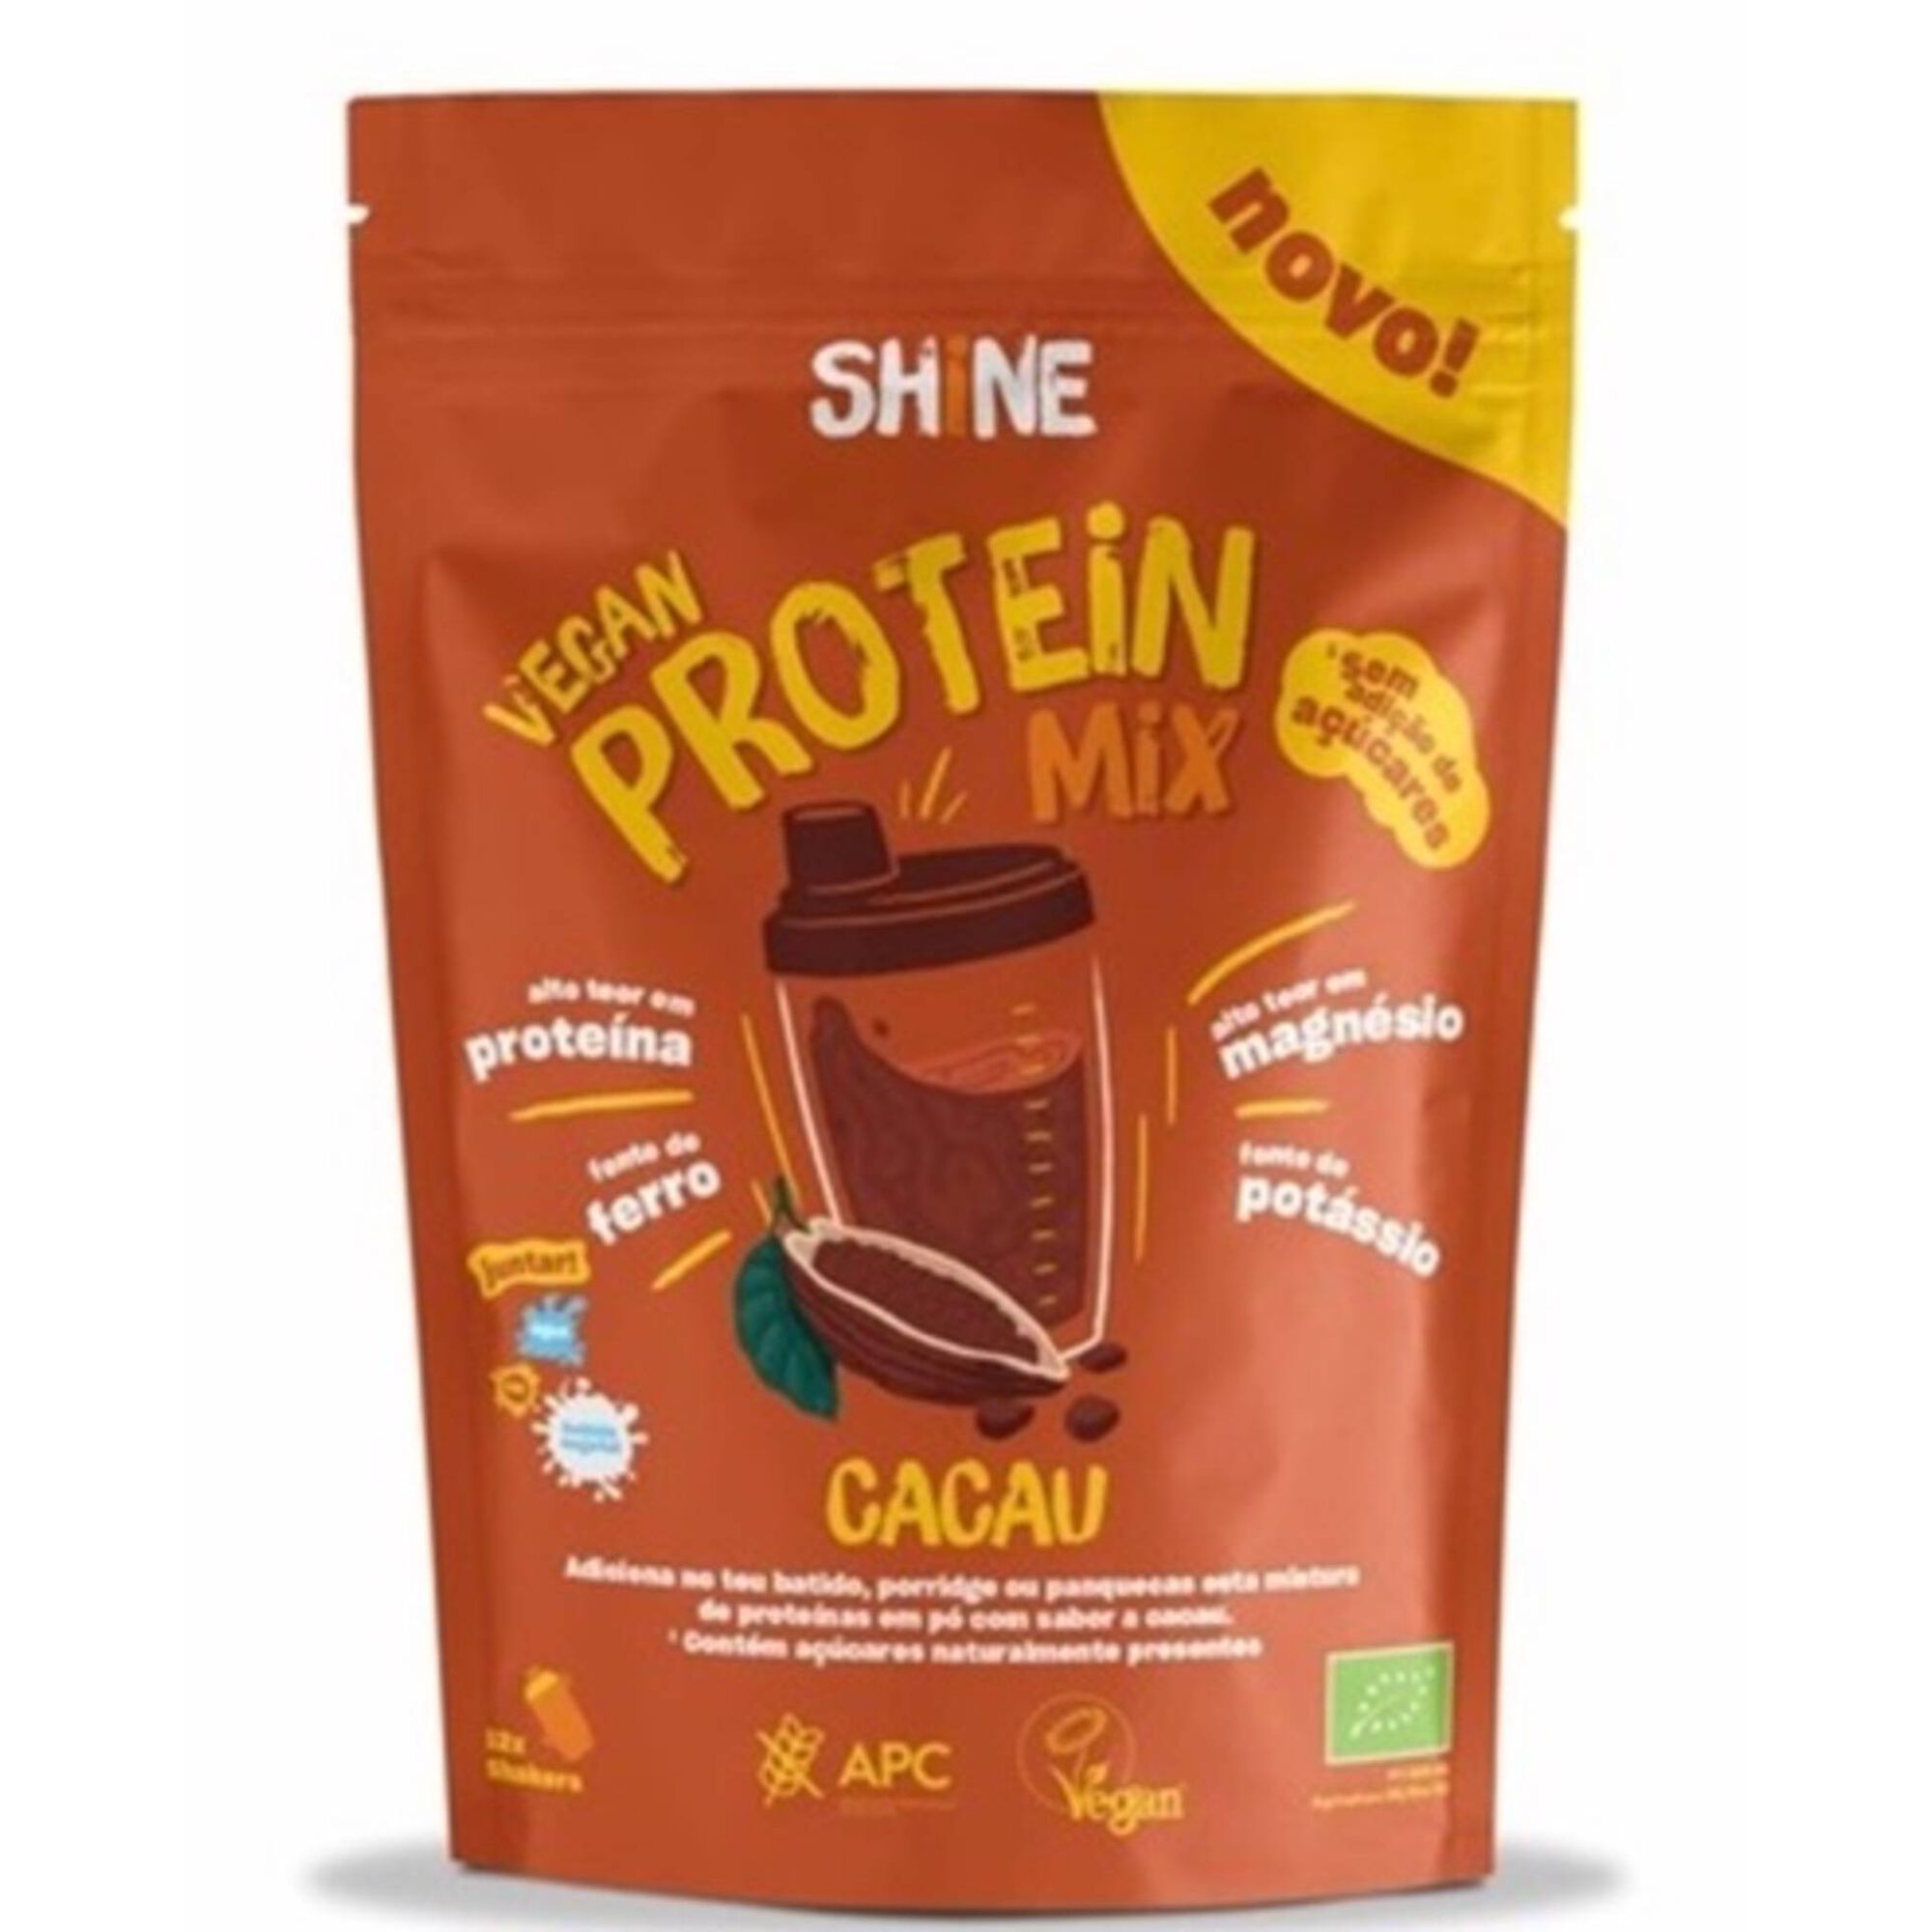 Mix Proteínas Cacau Vegan sem Glúten